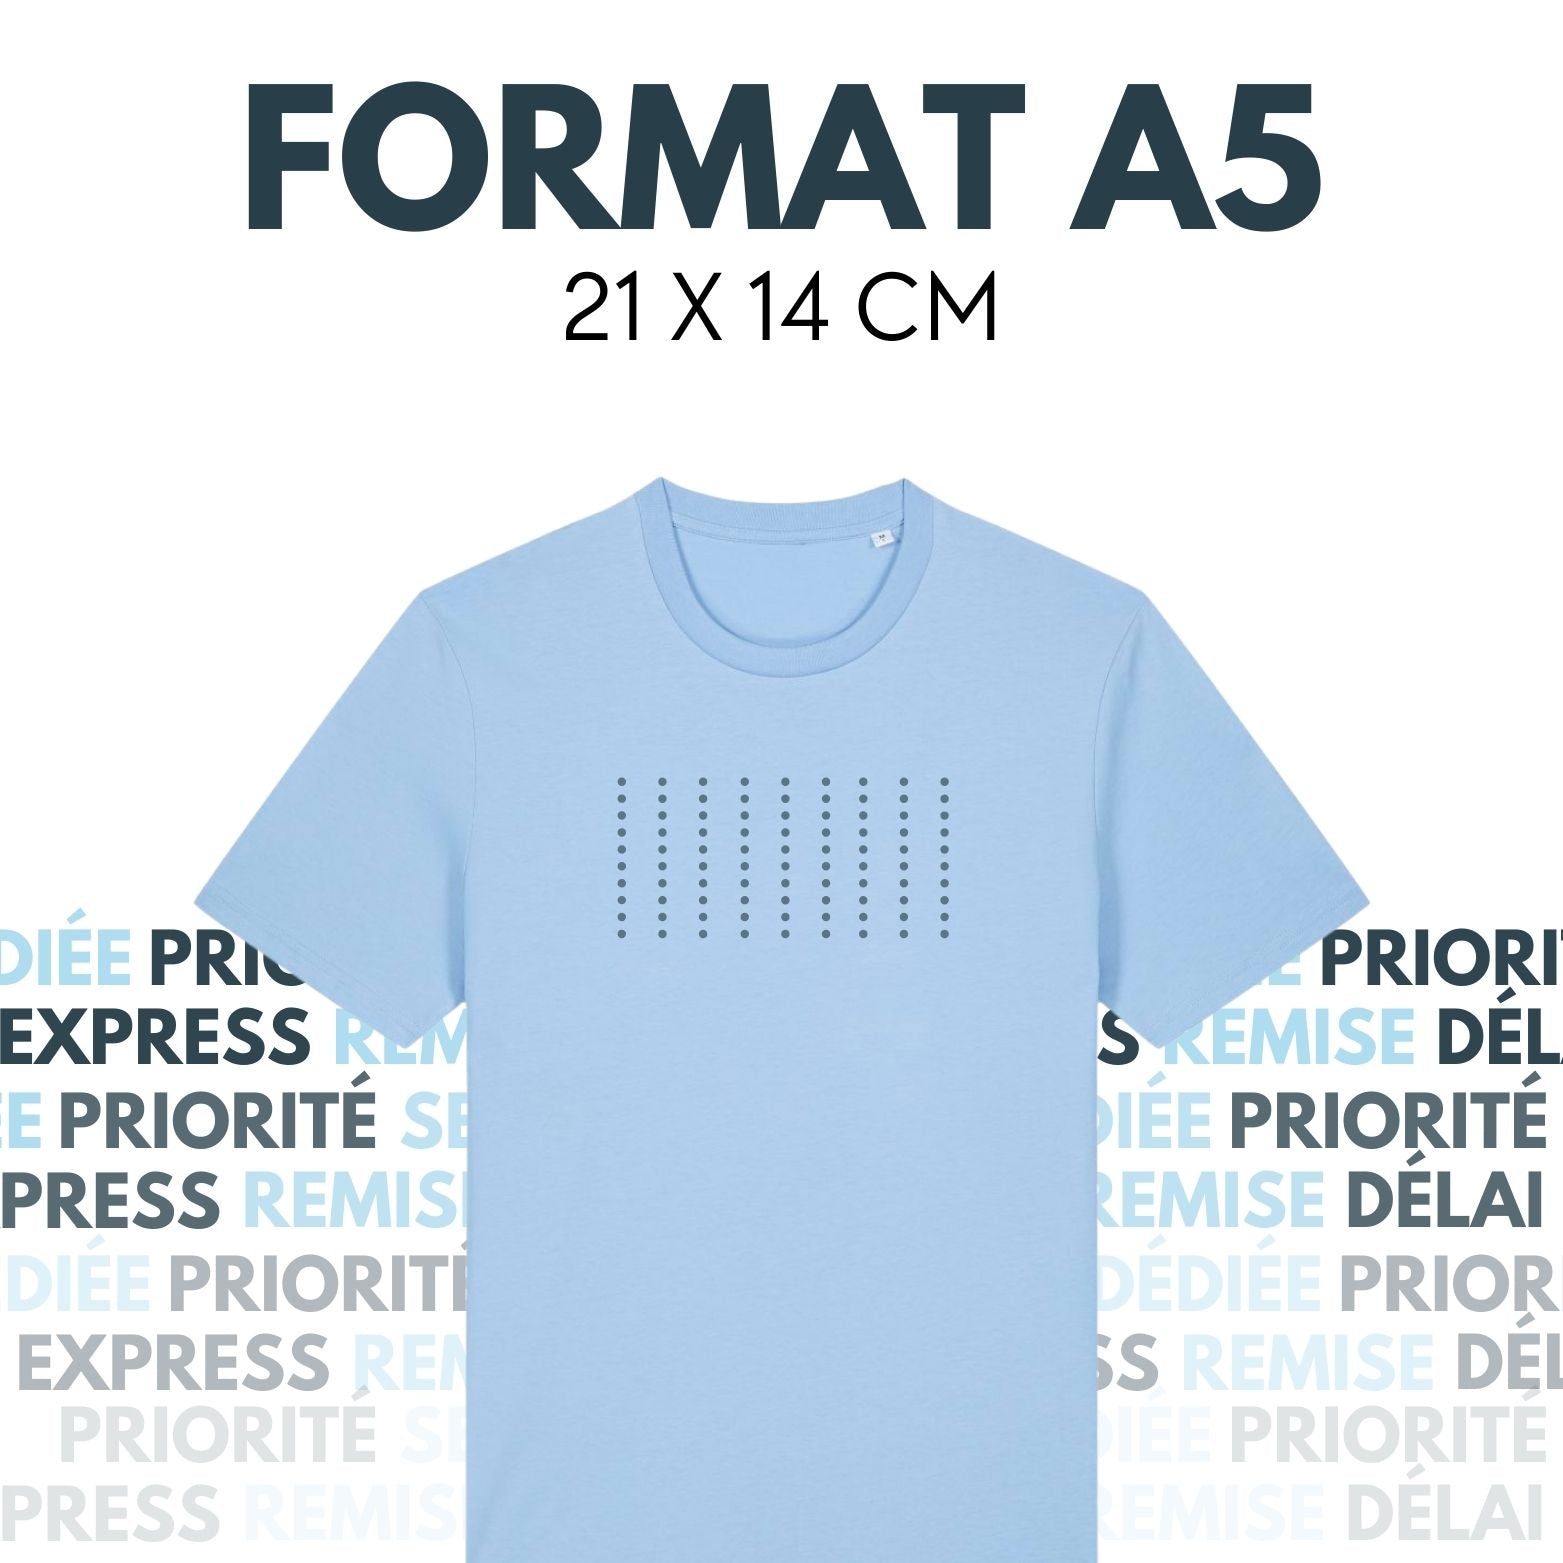 FORMAT A5 - Feuille de transfert DTF